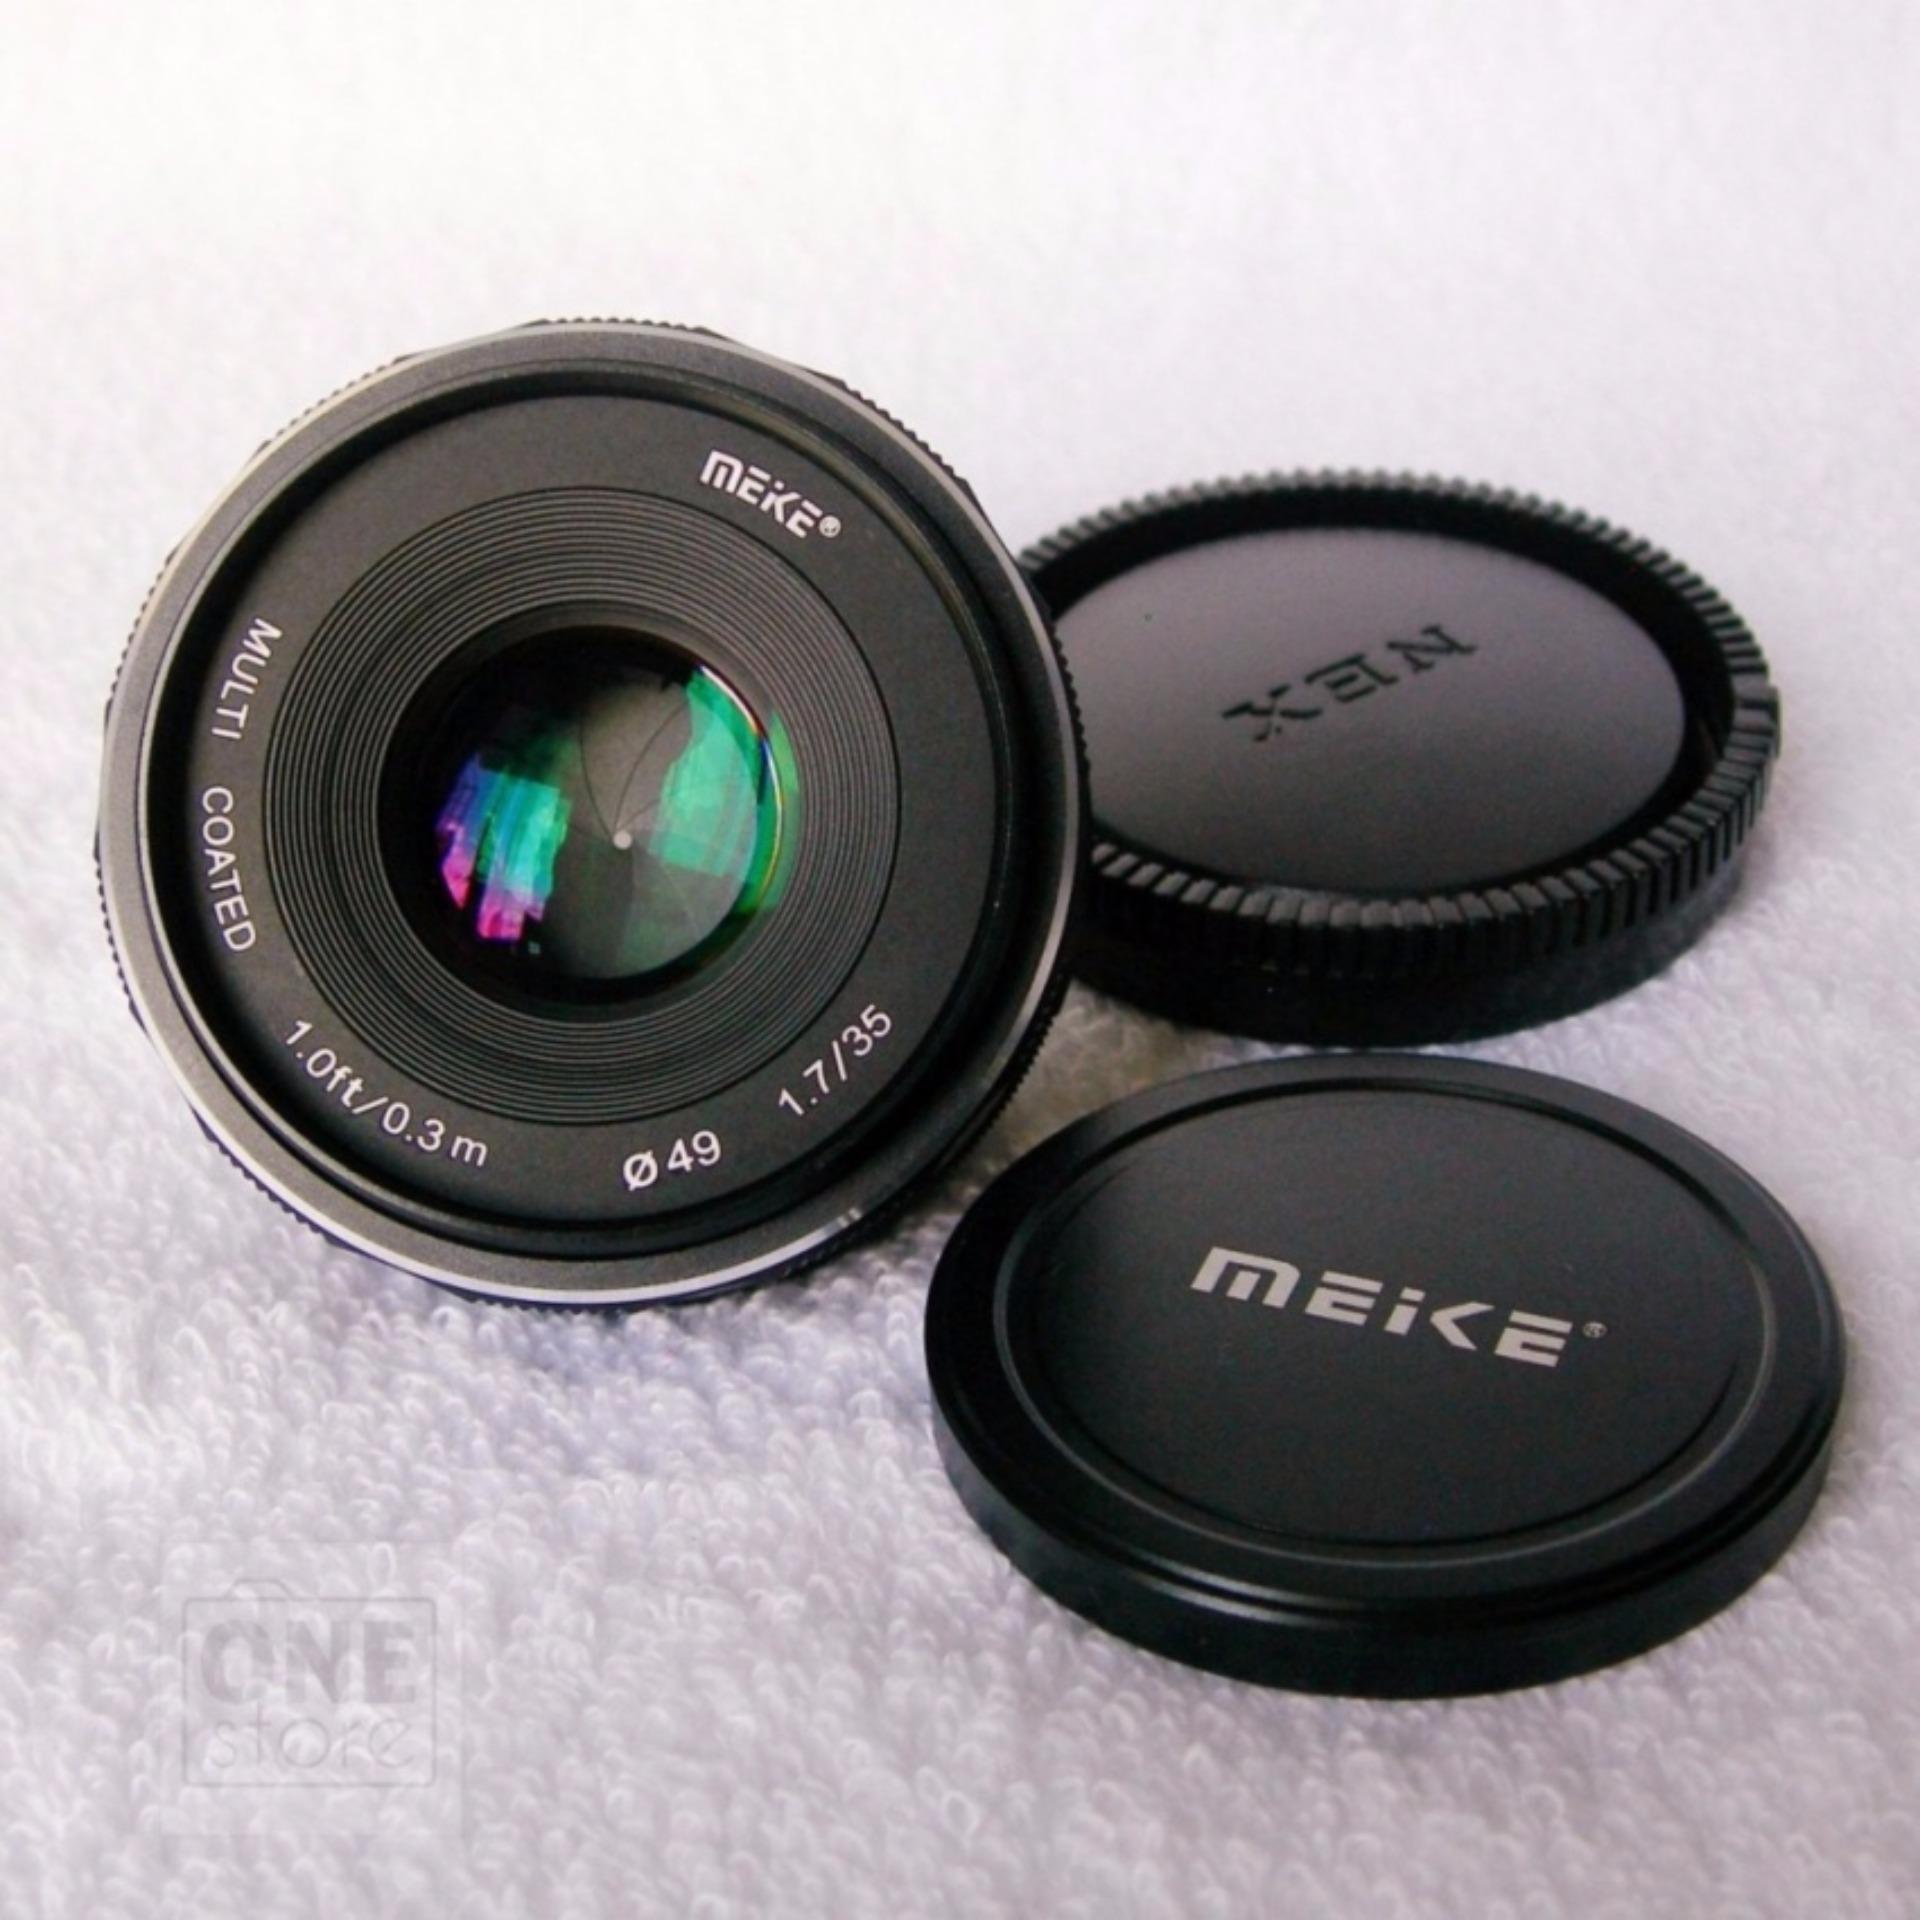 Ống kính Meike 35mm F1.7 cho Sony E mount- manual focus (Đen)